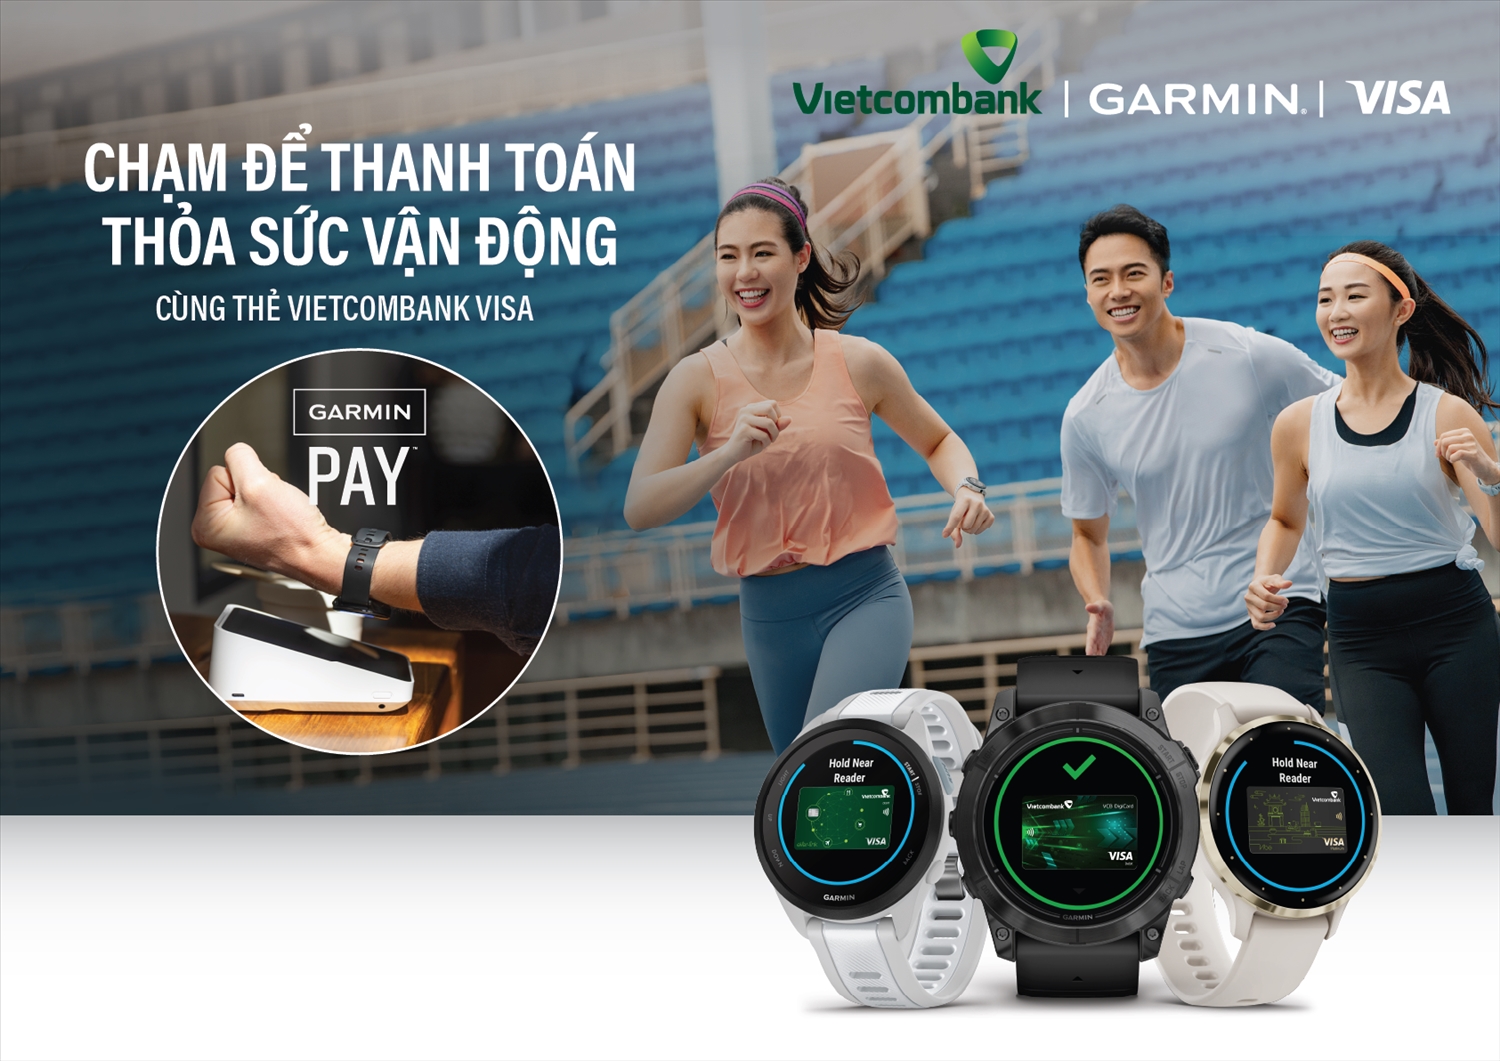  Ngân hàng TMCP Ngoại thương Việt Nam (Vietcombank) chính thức triển khai giải pháp thanh toán Garmin Pay với thẻ Vietcombank Visa